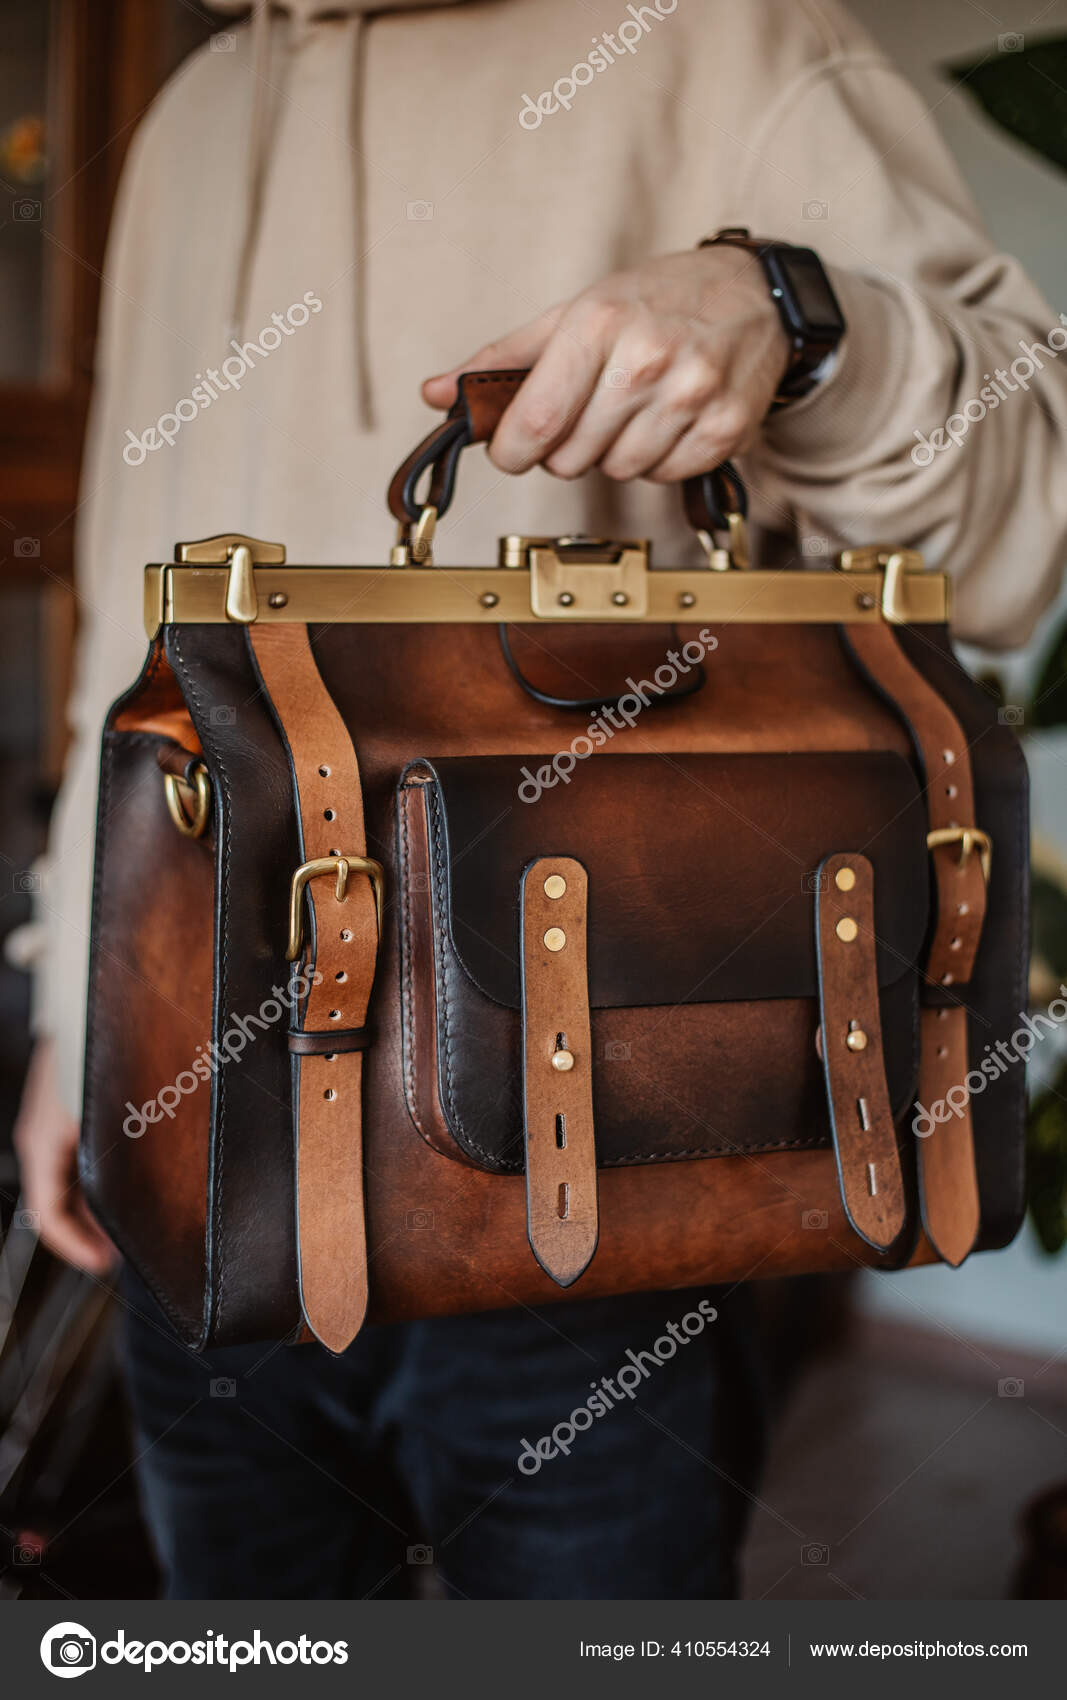 Morbosidad tifón Fanático Hombre de negocios con elegante maletín de cuero marrón.: fotografía de  stock © vershinin.photo #410554324 | Depositphotos